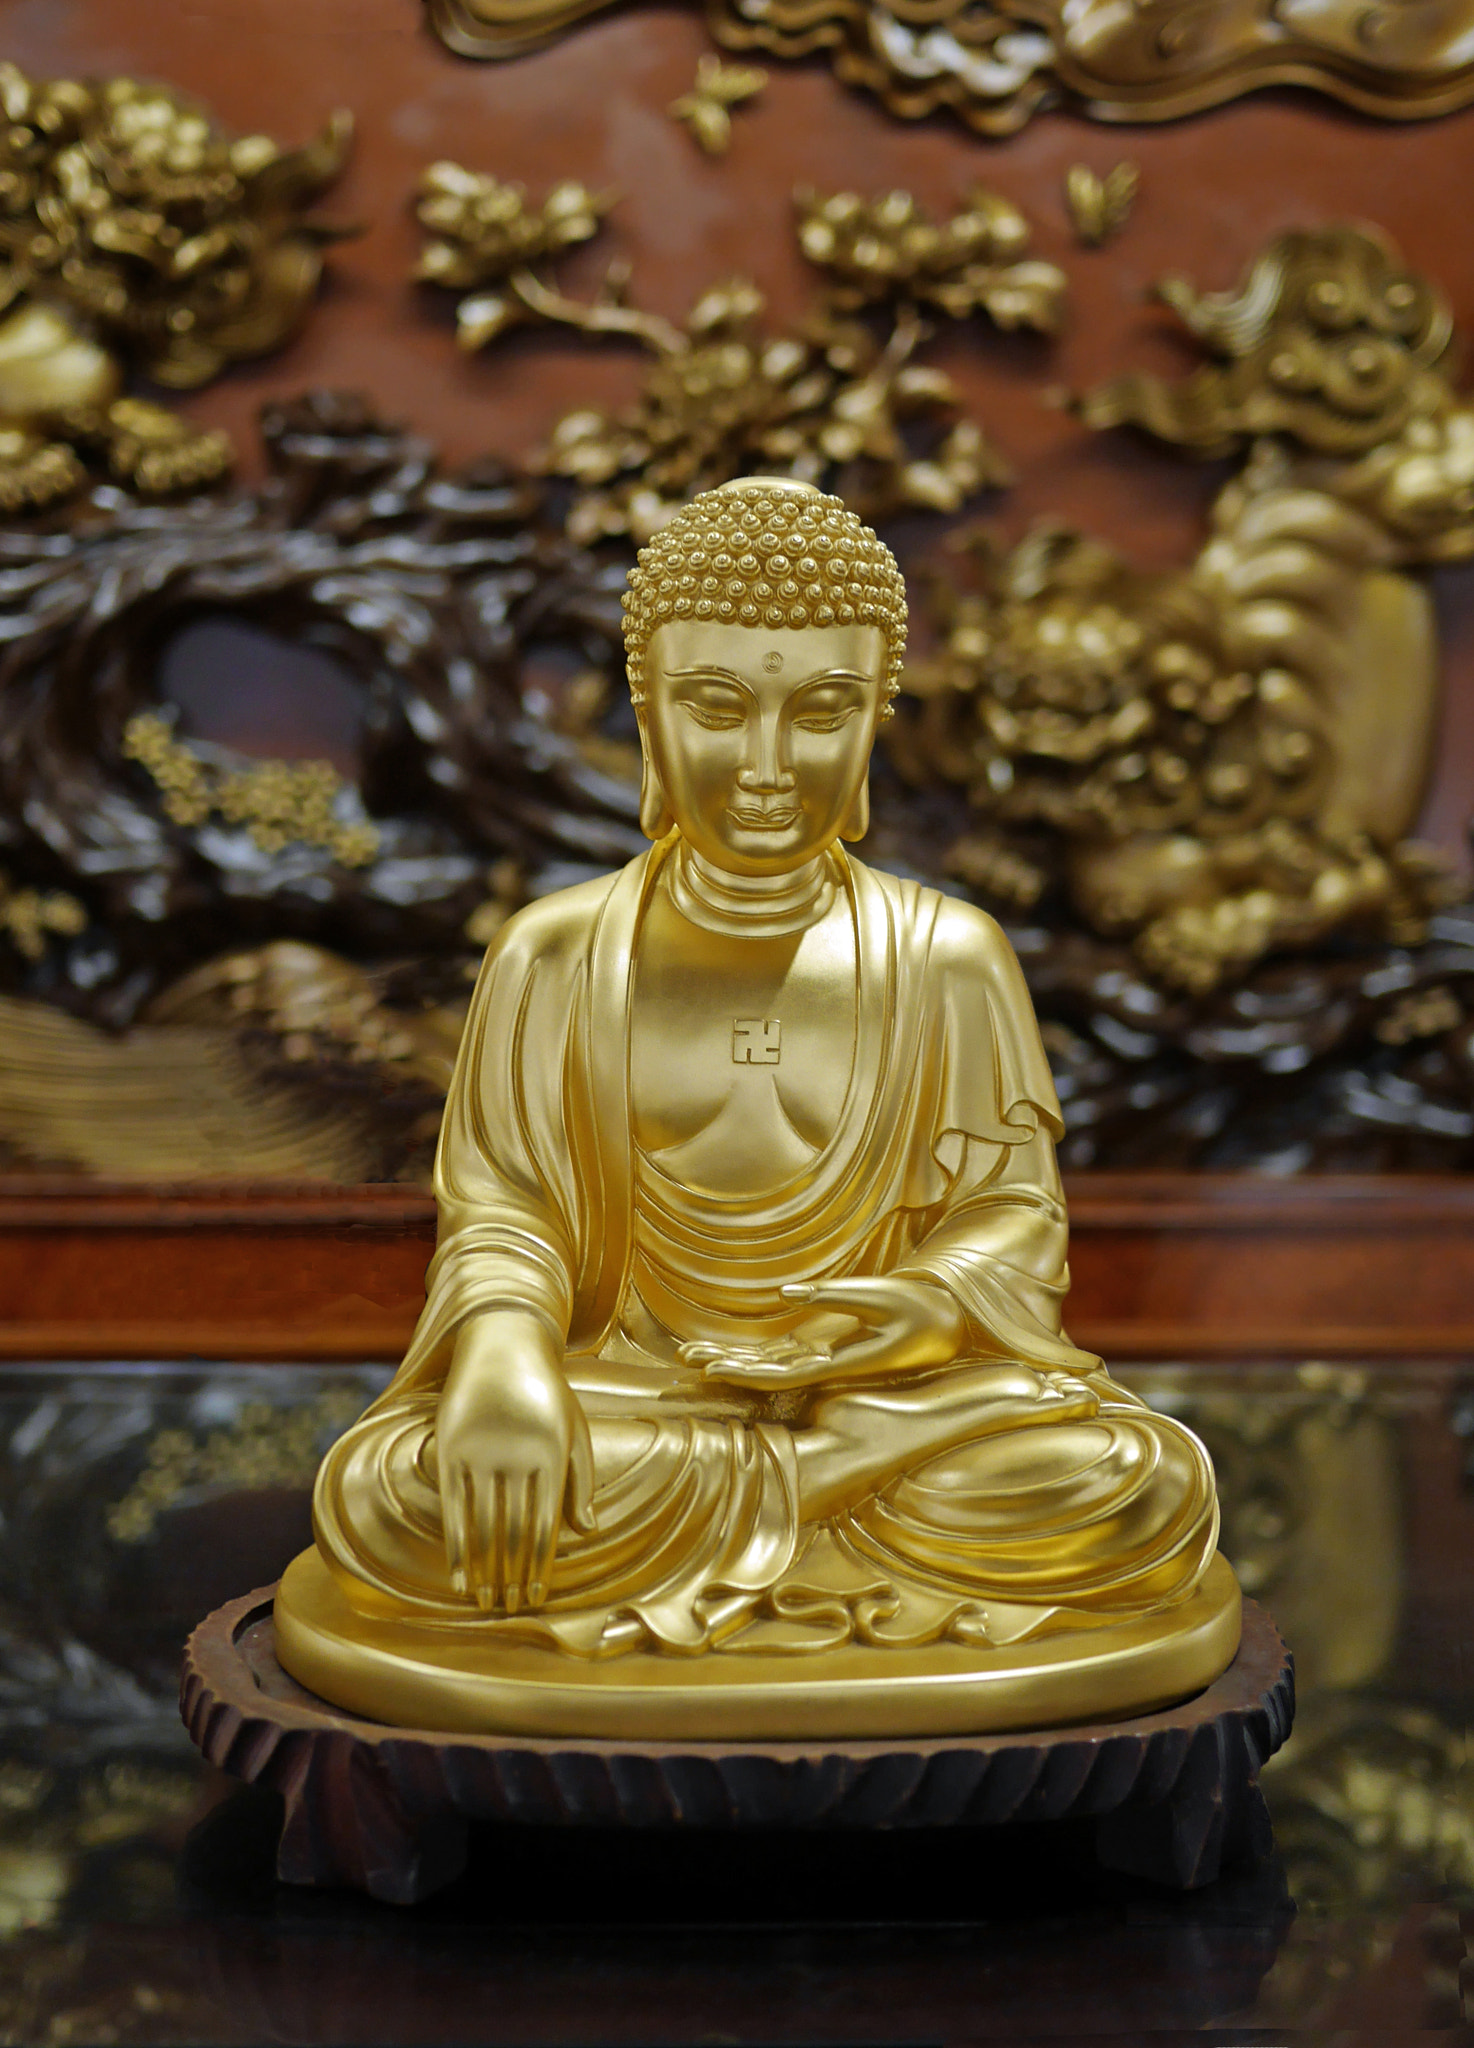 Panasonic Lumix DMC-GX7 + LUMIX G 20/F1.7 II sample photo. Statue of buddha seated photography